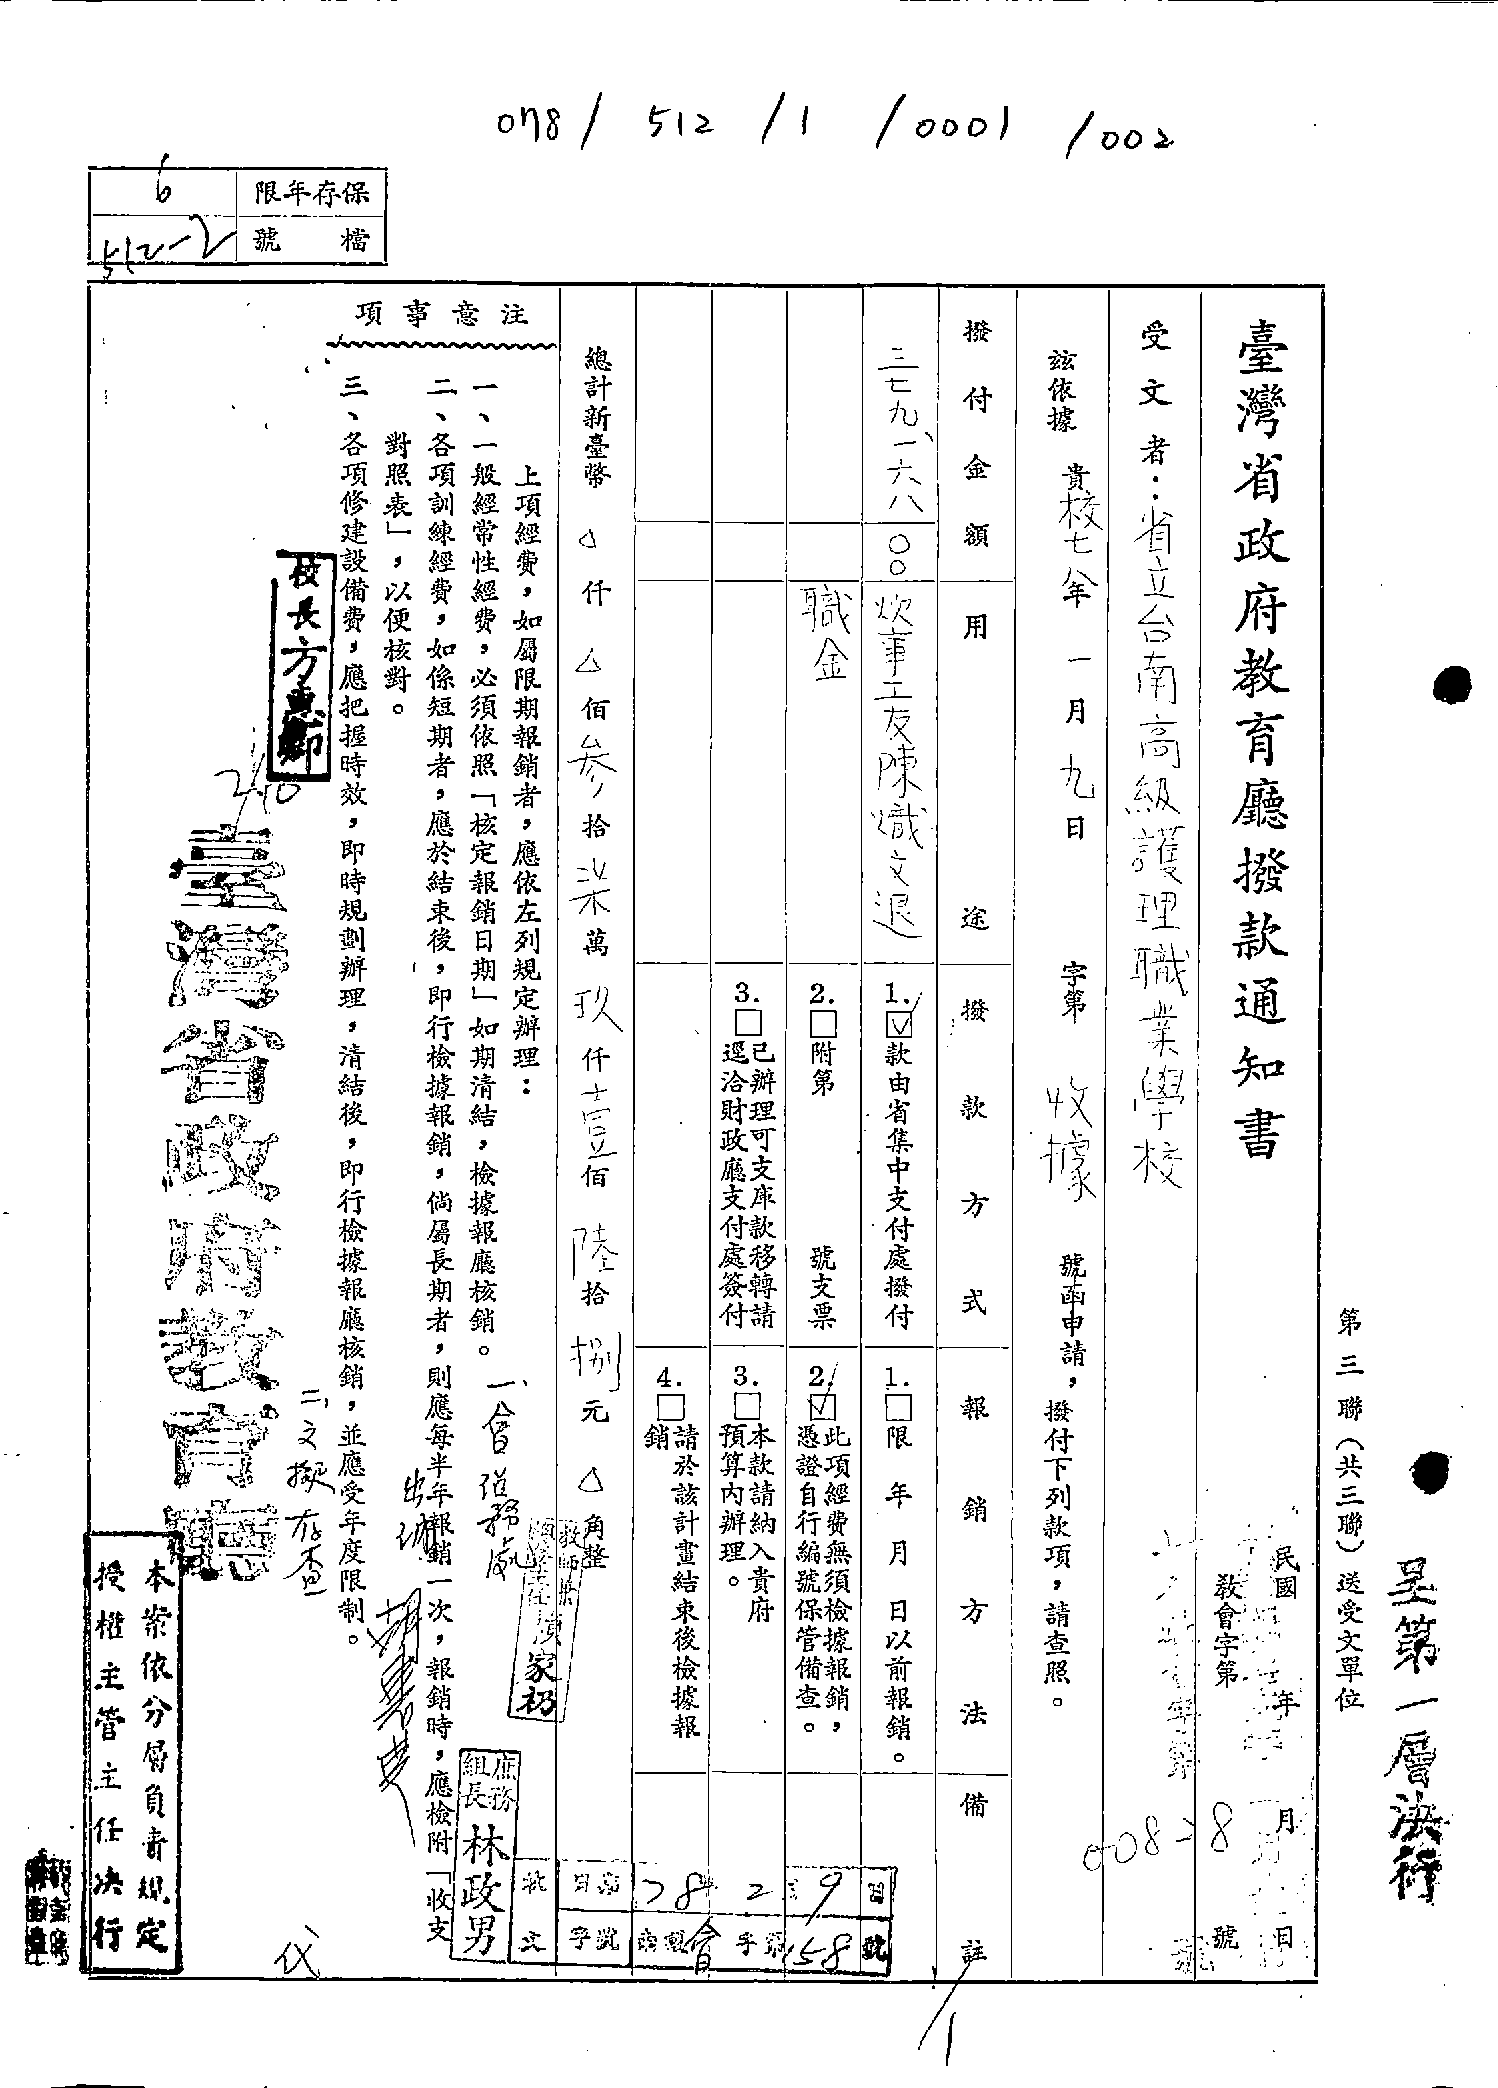 一張來自台灣省教育廳的掃描公文